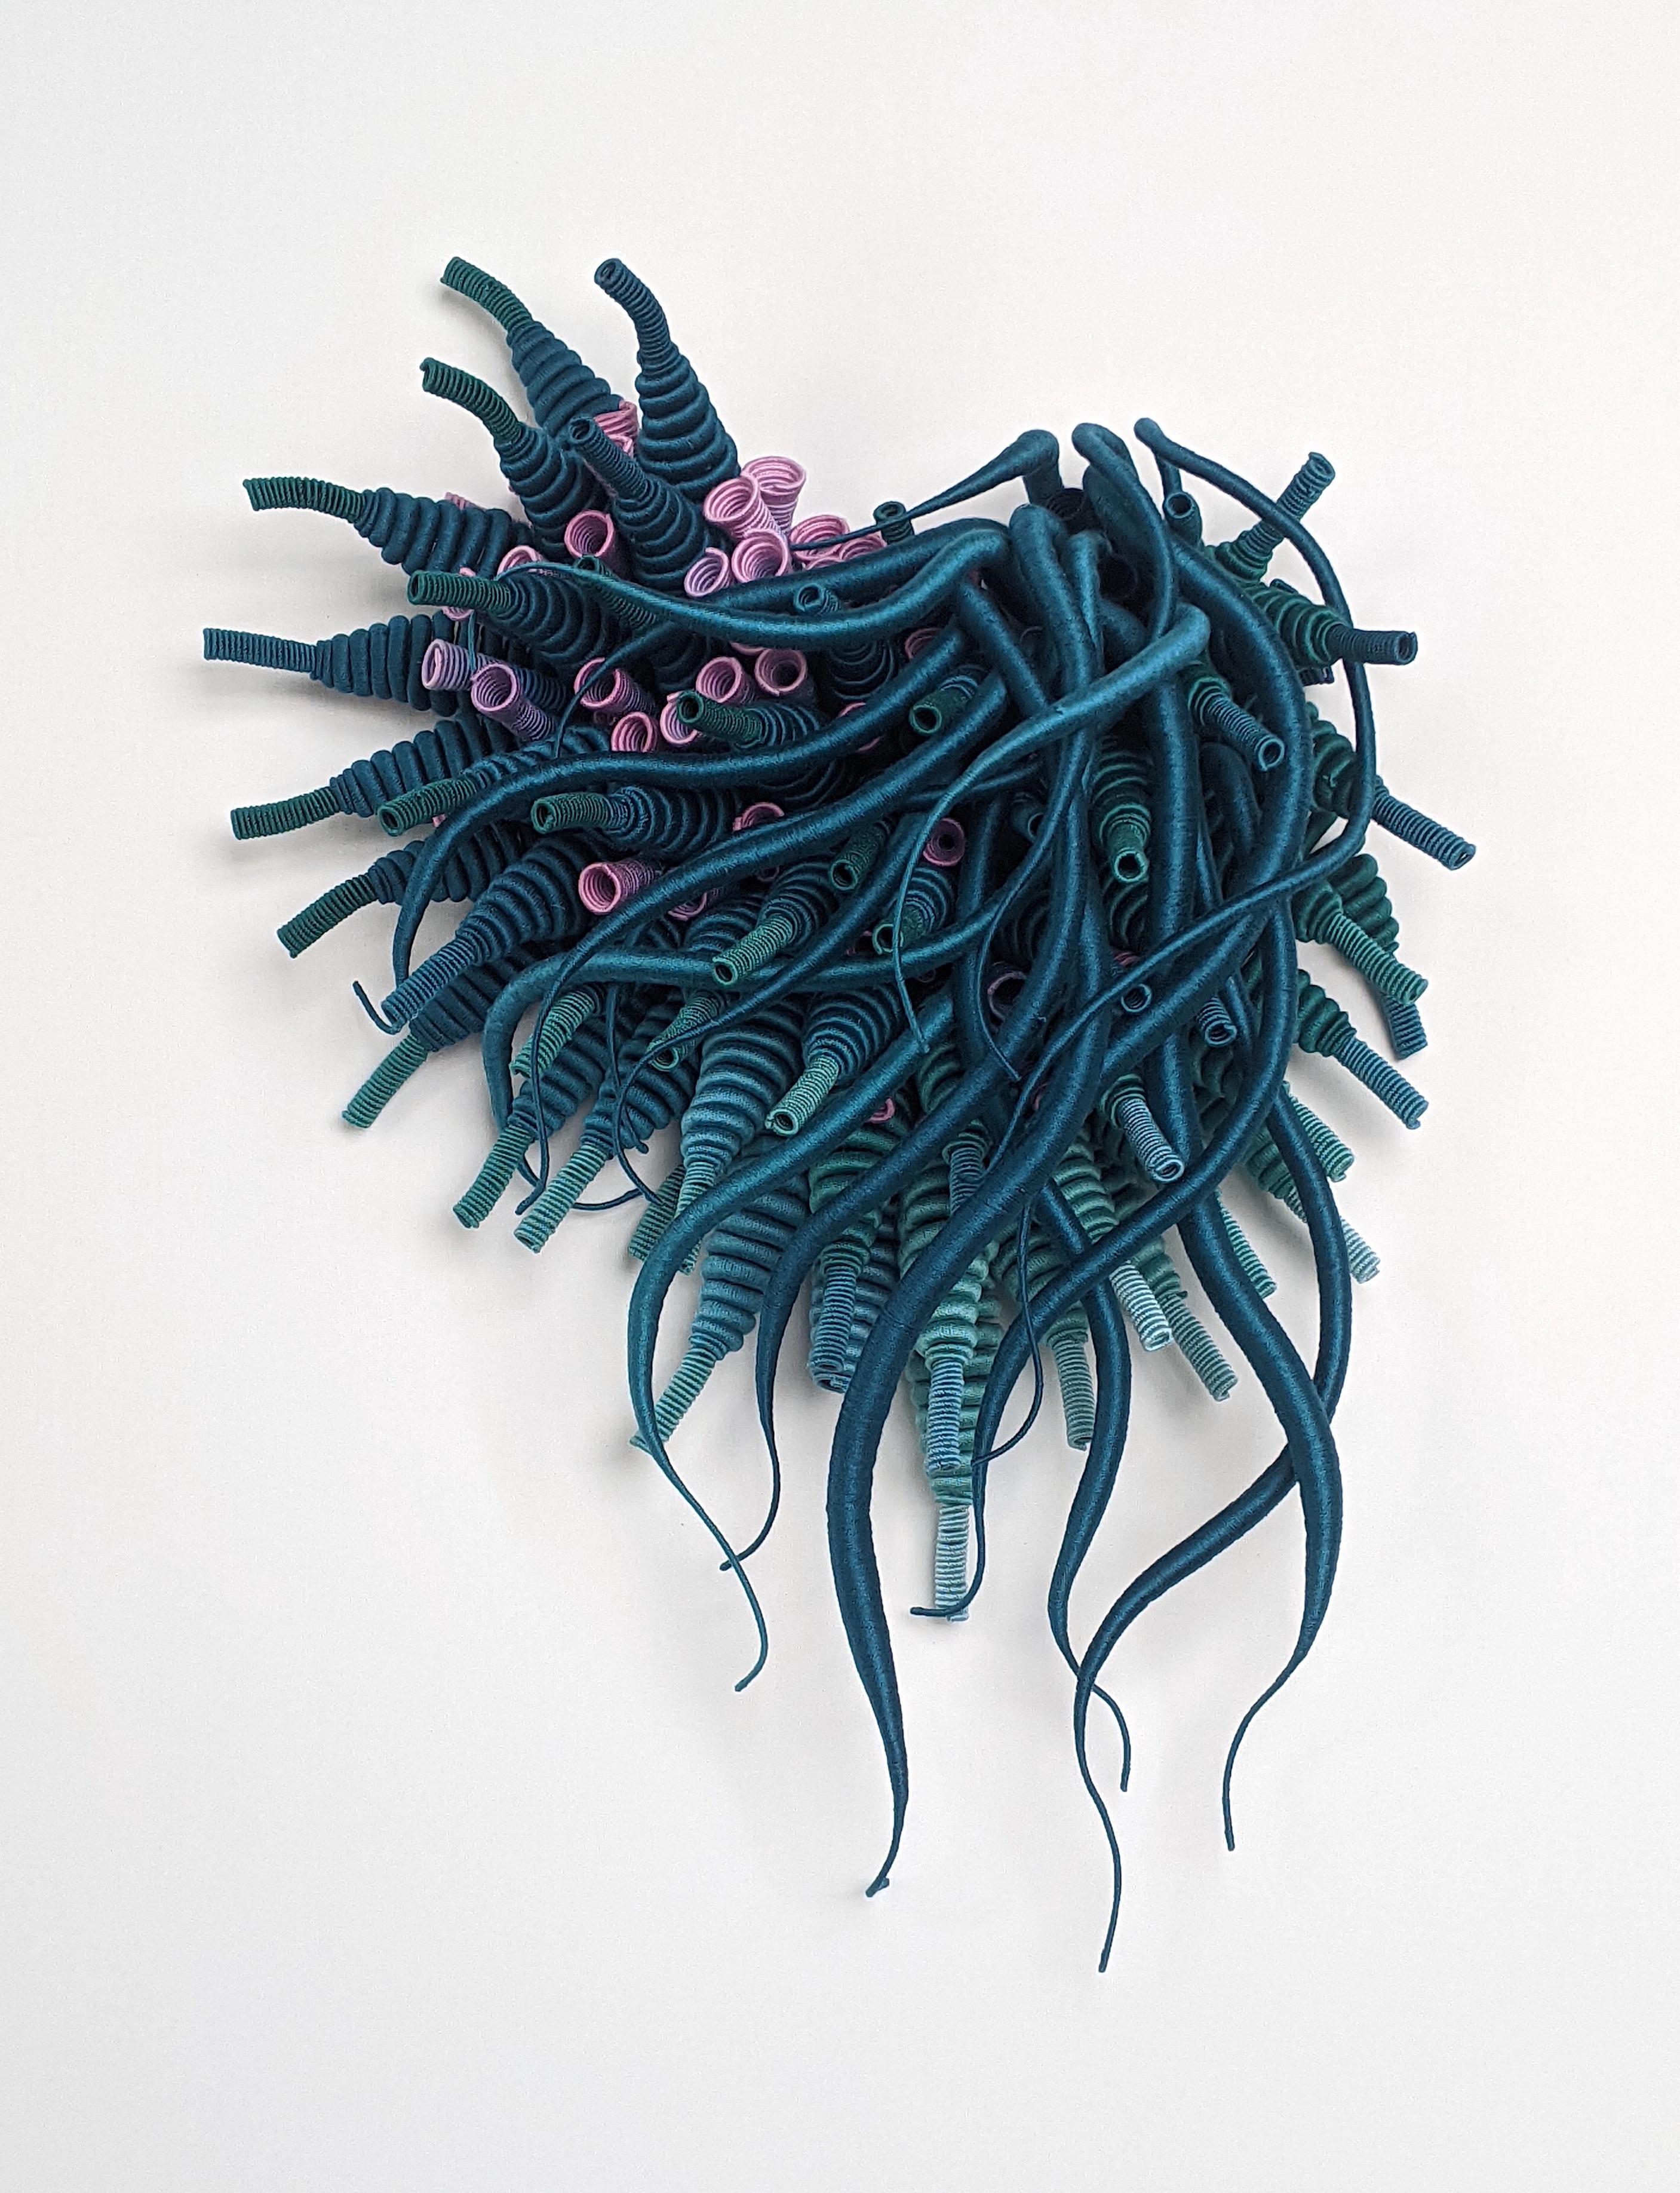 Specimen 25, Sculpture en fibre teintée à la main bleu sarcelle, inspirée de la nature marine, encadrée